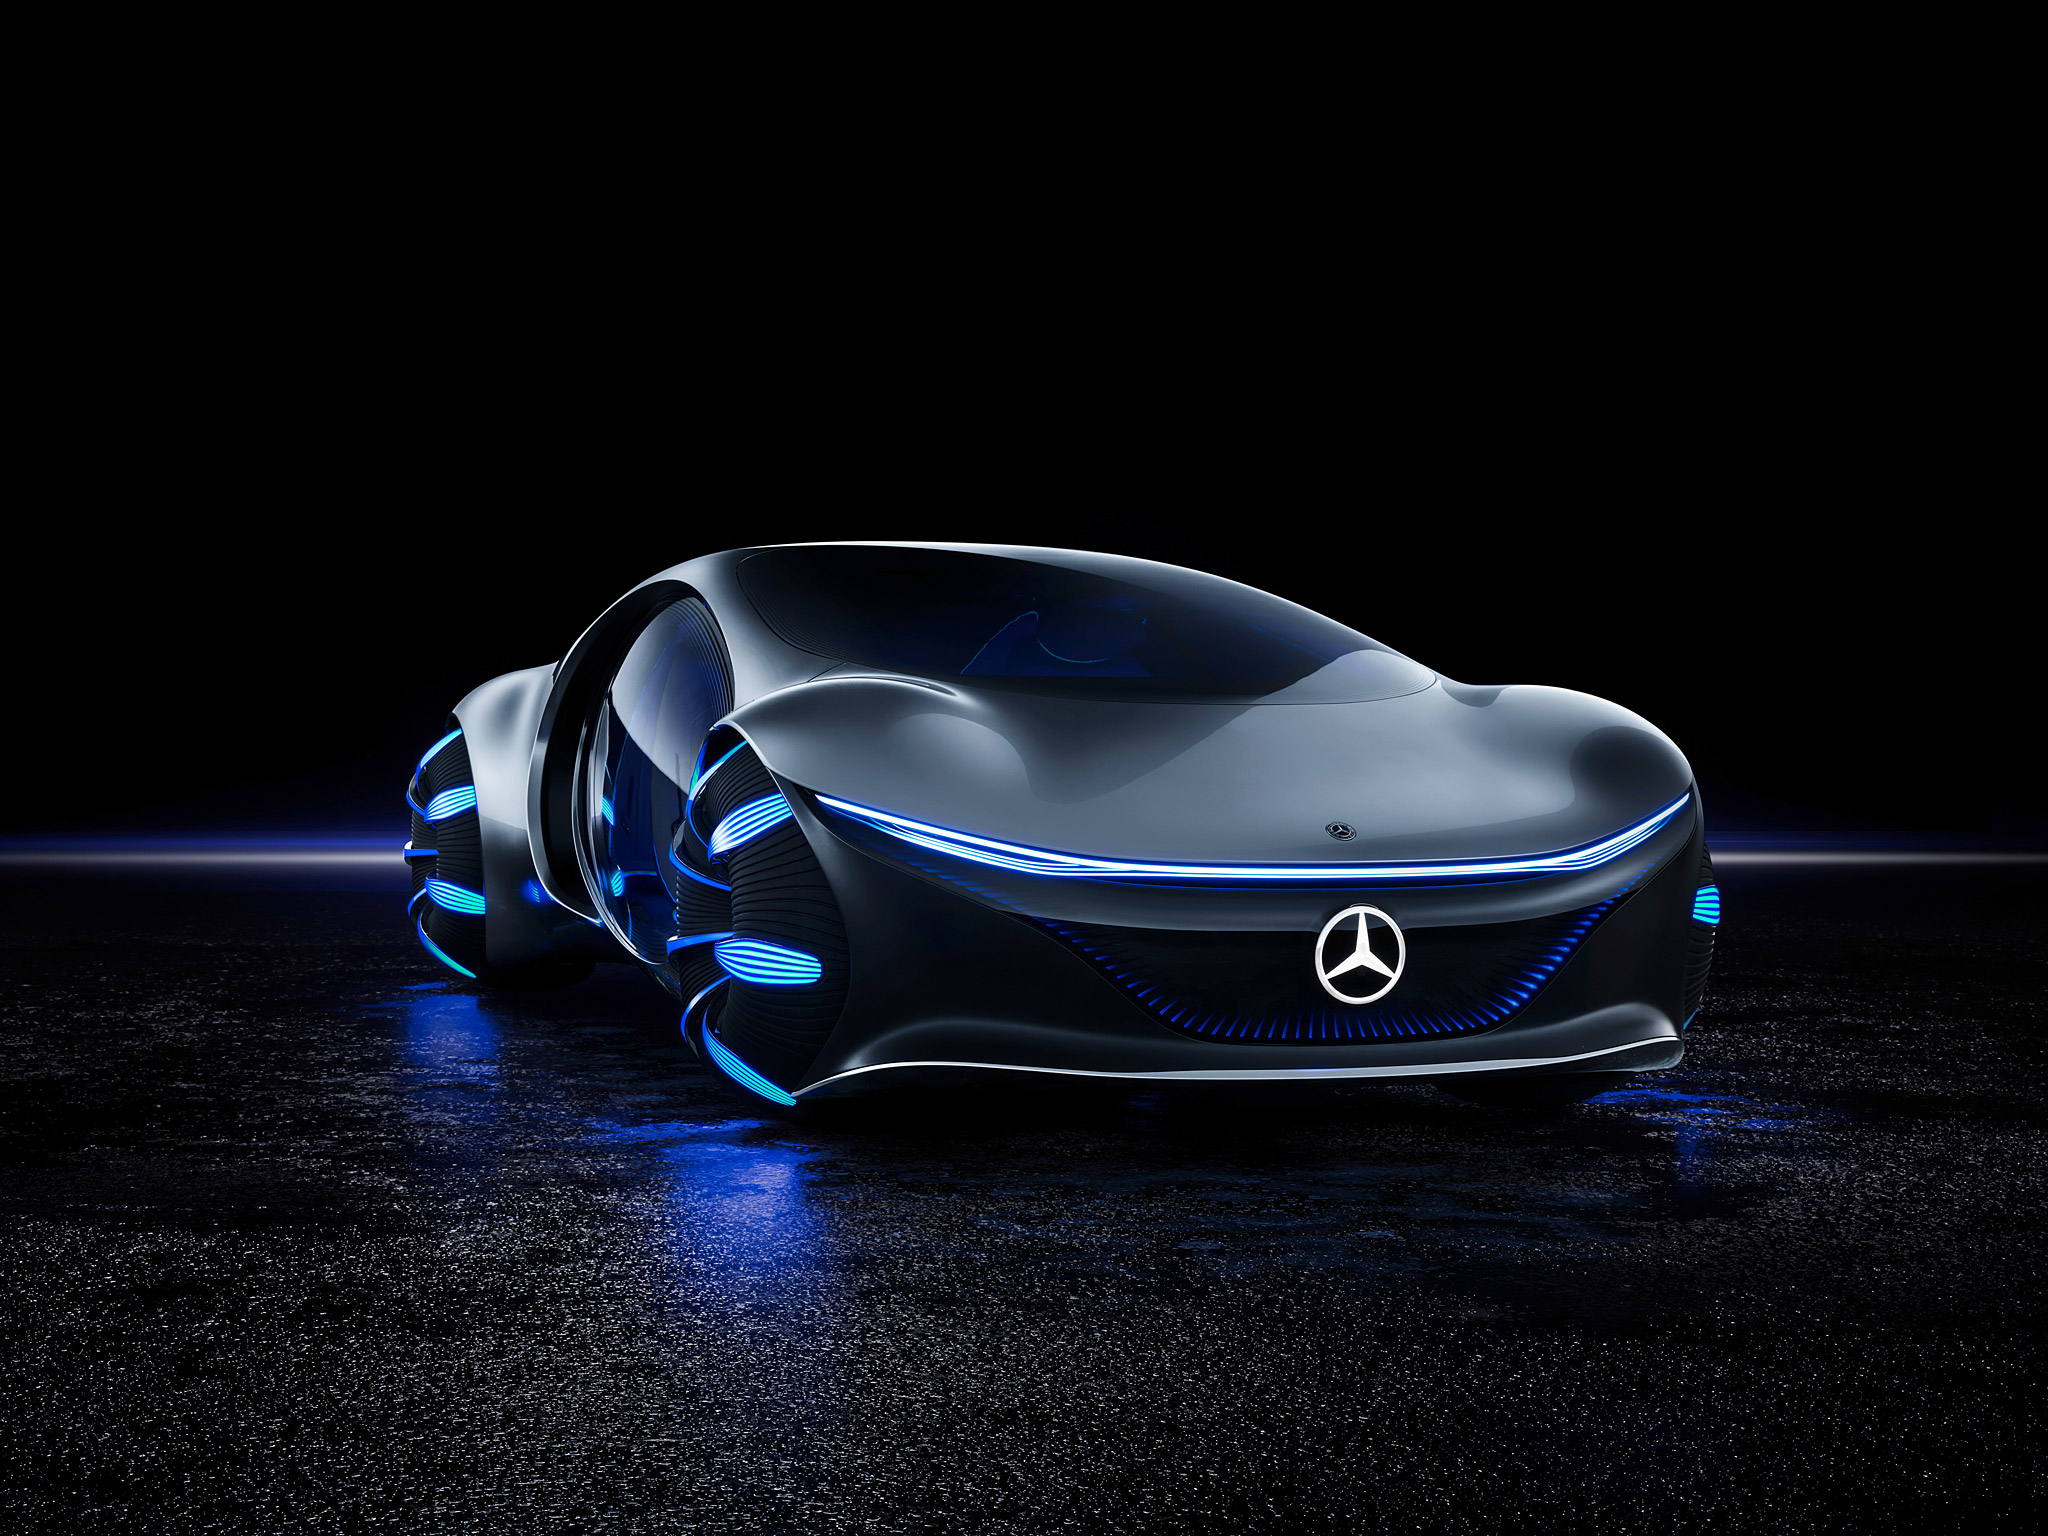  2020 Mercedes-Benz Vision AVTR Concept Wallpaper.